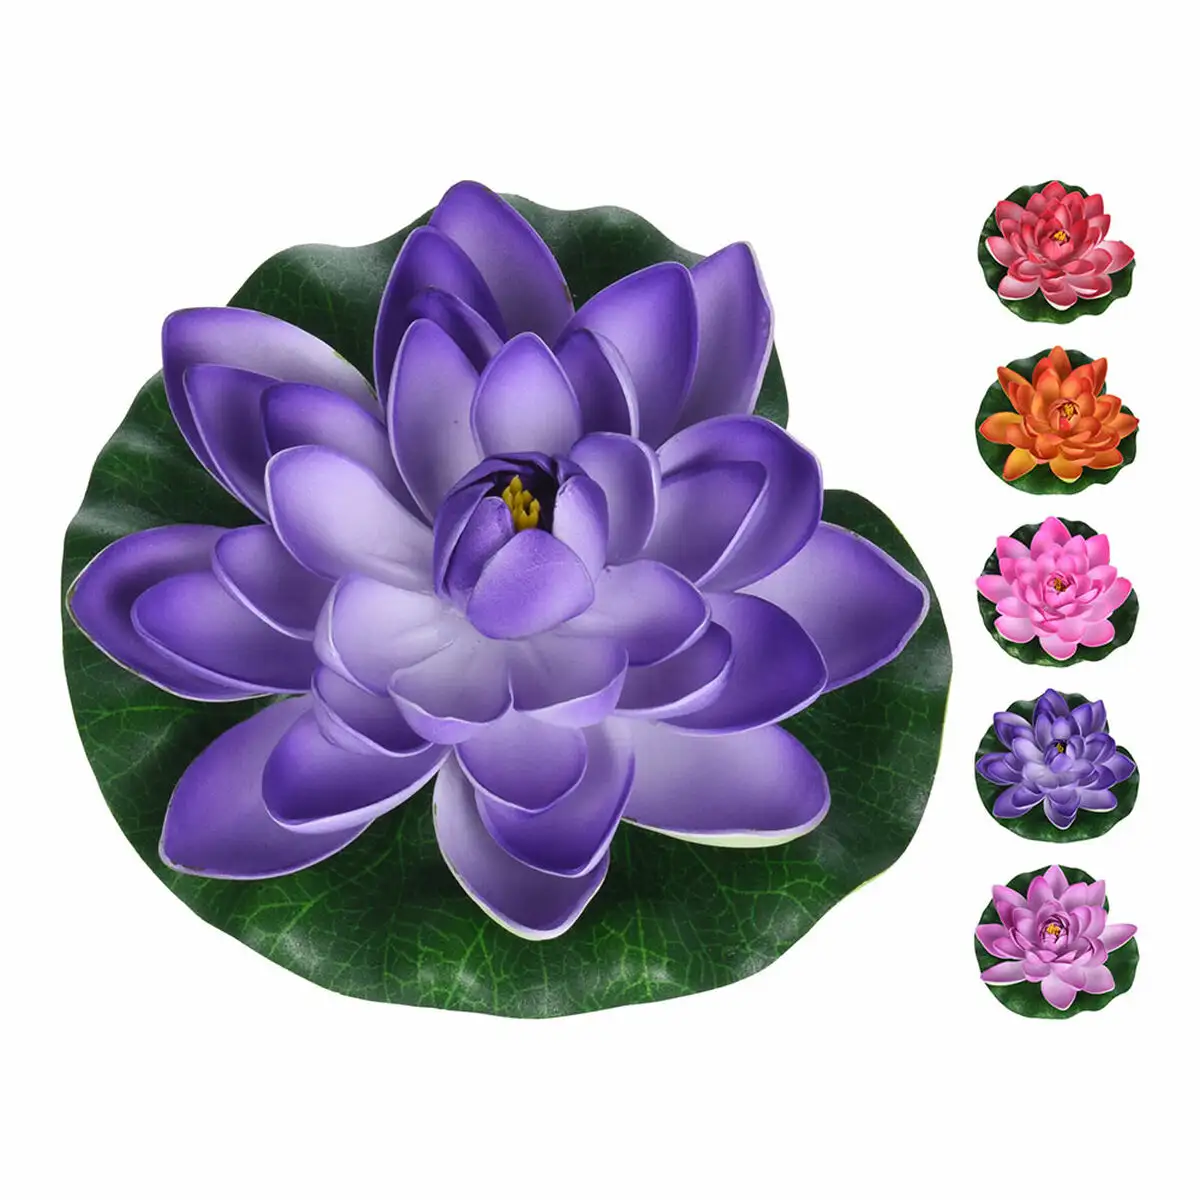 Plante de corative artificielle 18 x 6 5 cm fleur de lotus_8780. Bienvenue sur DIAYTAR SENEGAL - Votre Évasion Shopping Personnalisée. Parcourez notre collection unique et trouvez des articles qui reflètent votre style et votre individualité.